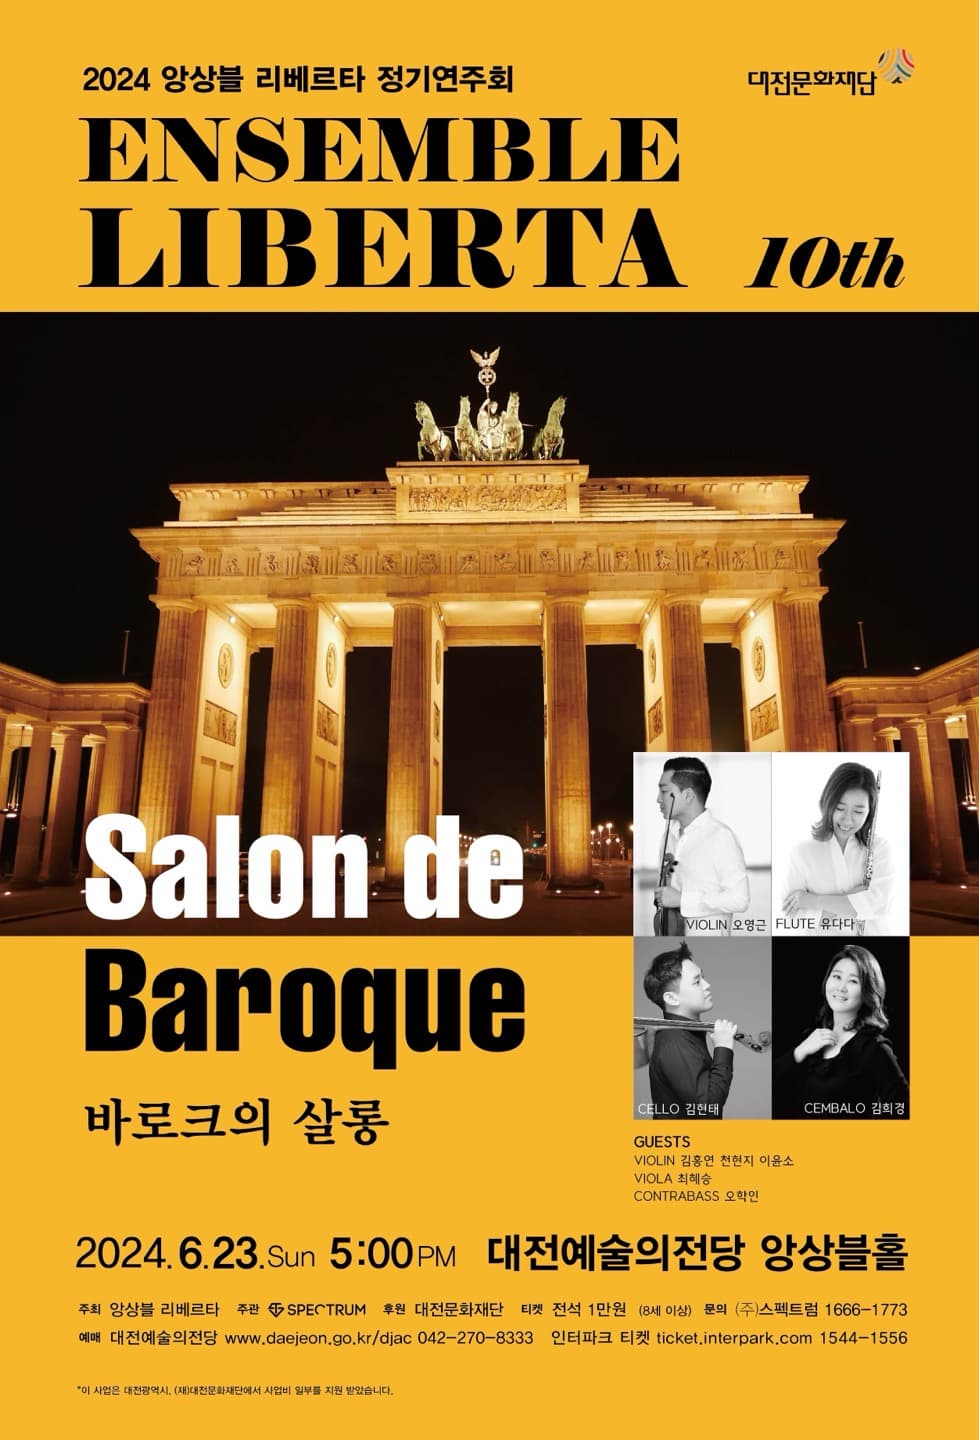 [대전] 제10회 앙상블 리베르타 정기연주회, Salon de Baroque 바로크의 살롱